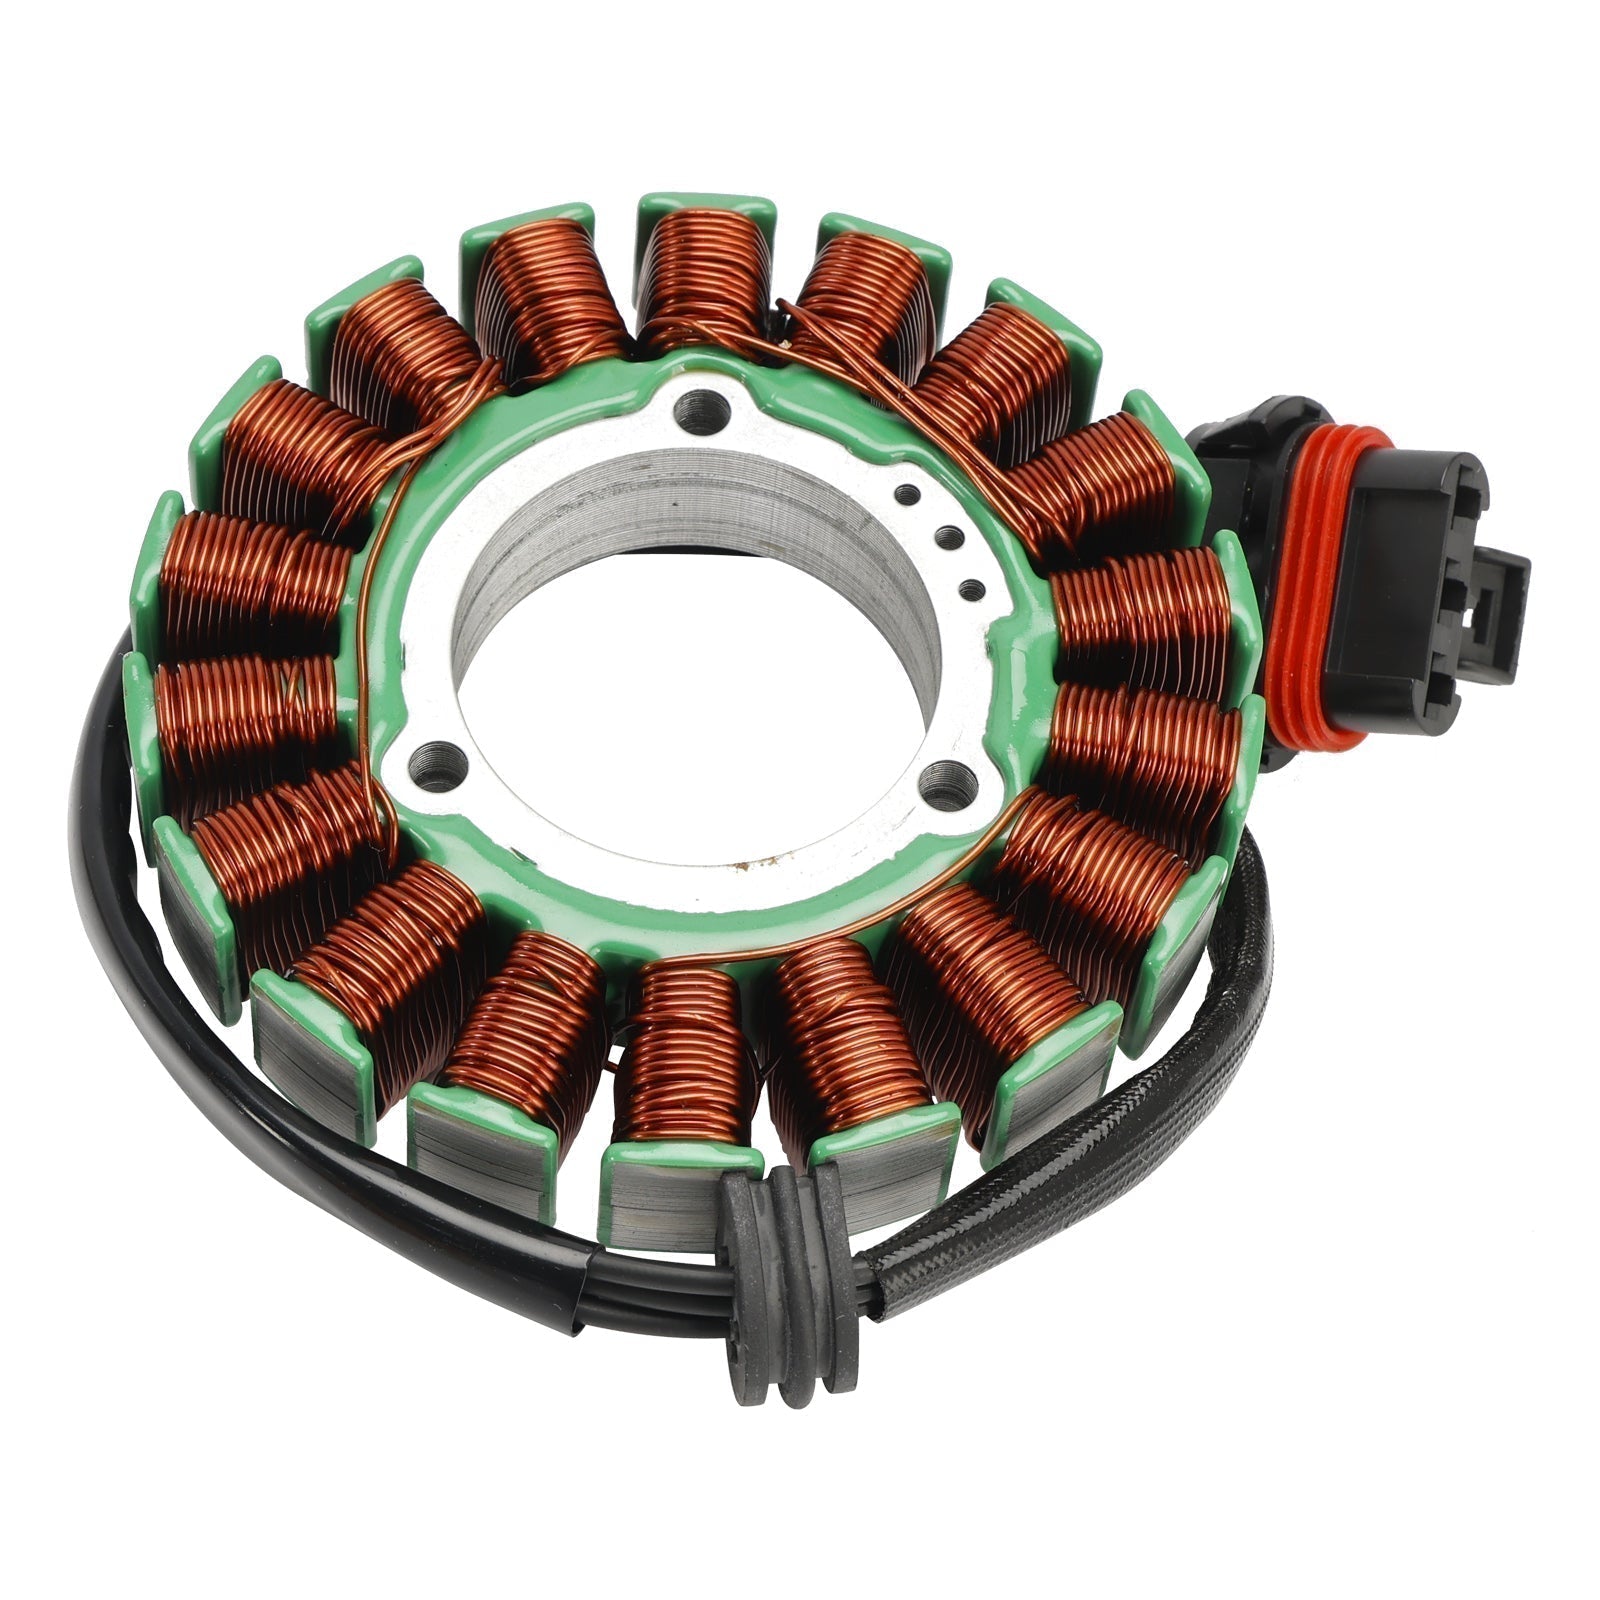 Stator de bobine magnétique Polaris RZR 2021 Turbo S4 + régulateur de tension + joint Assy 2021 – 1000, 4013970 – 4013970